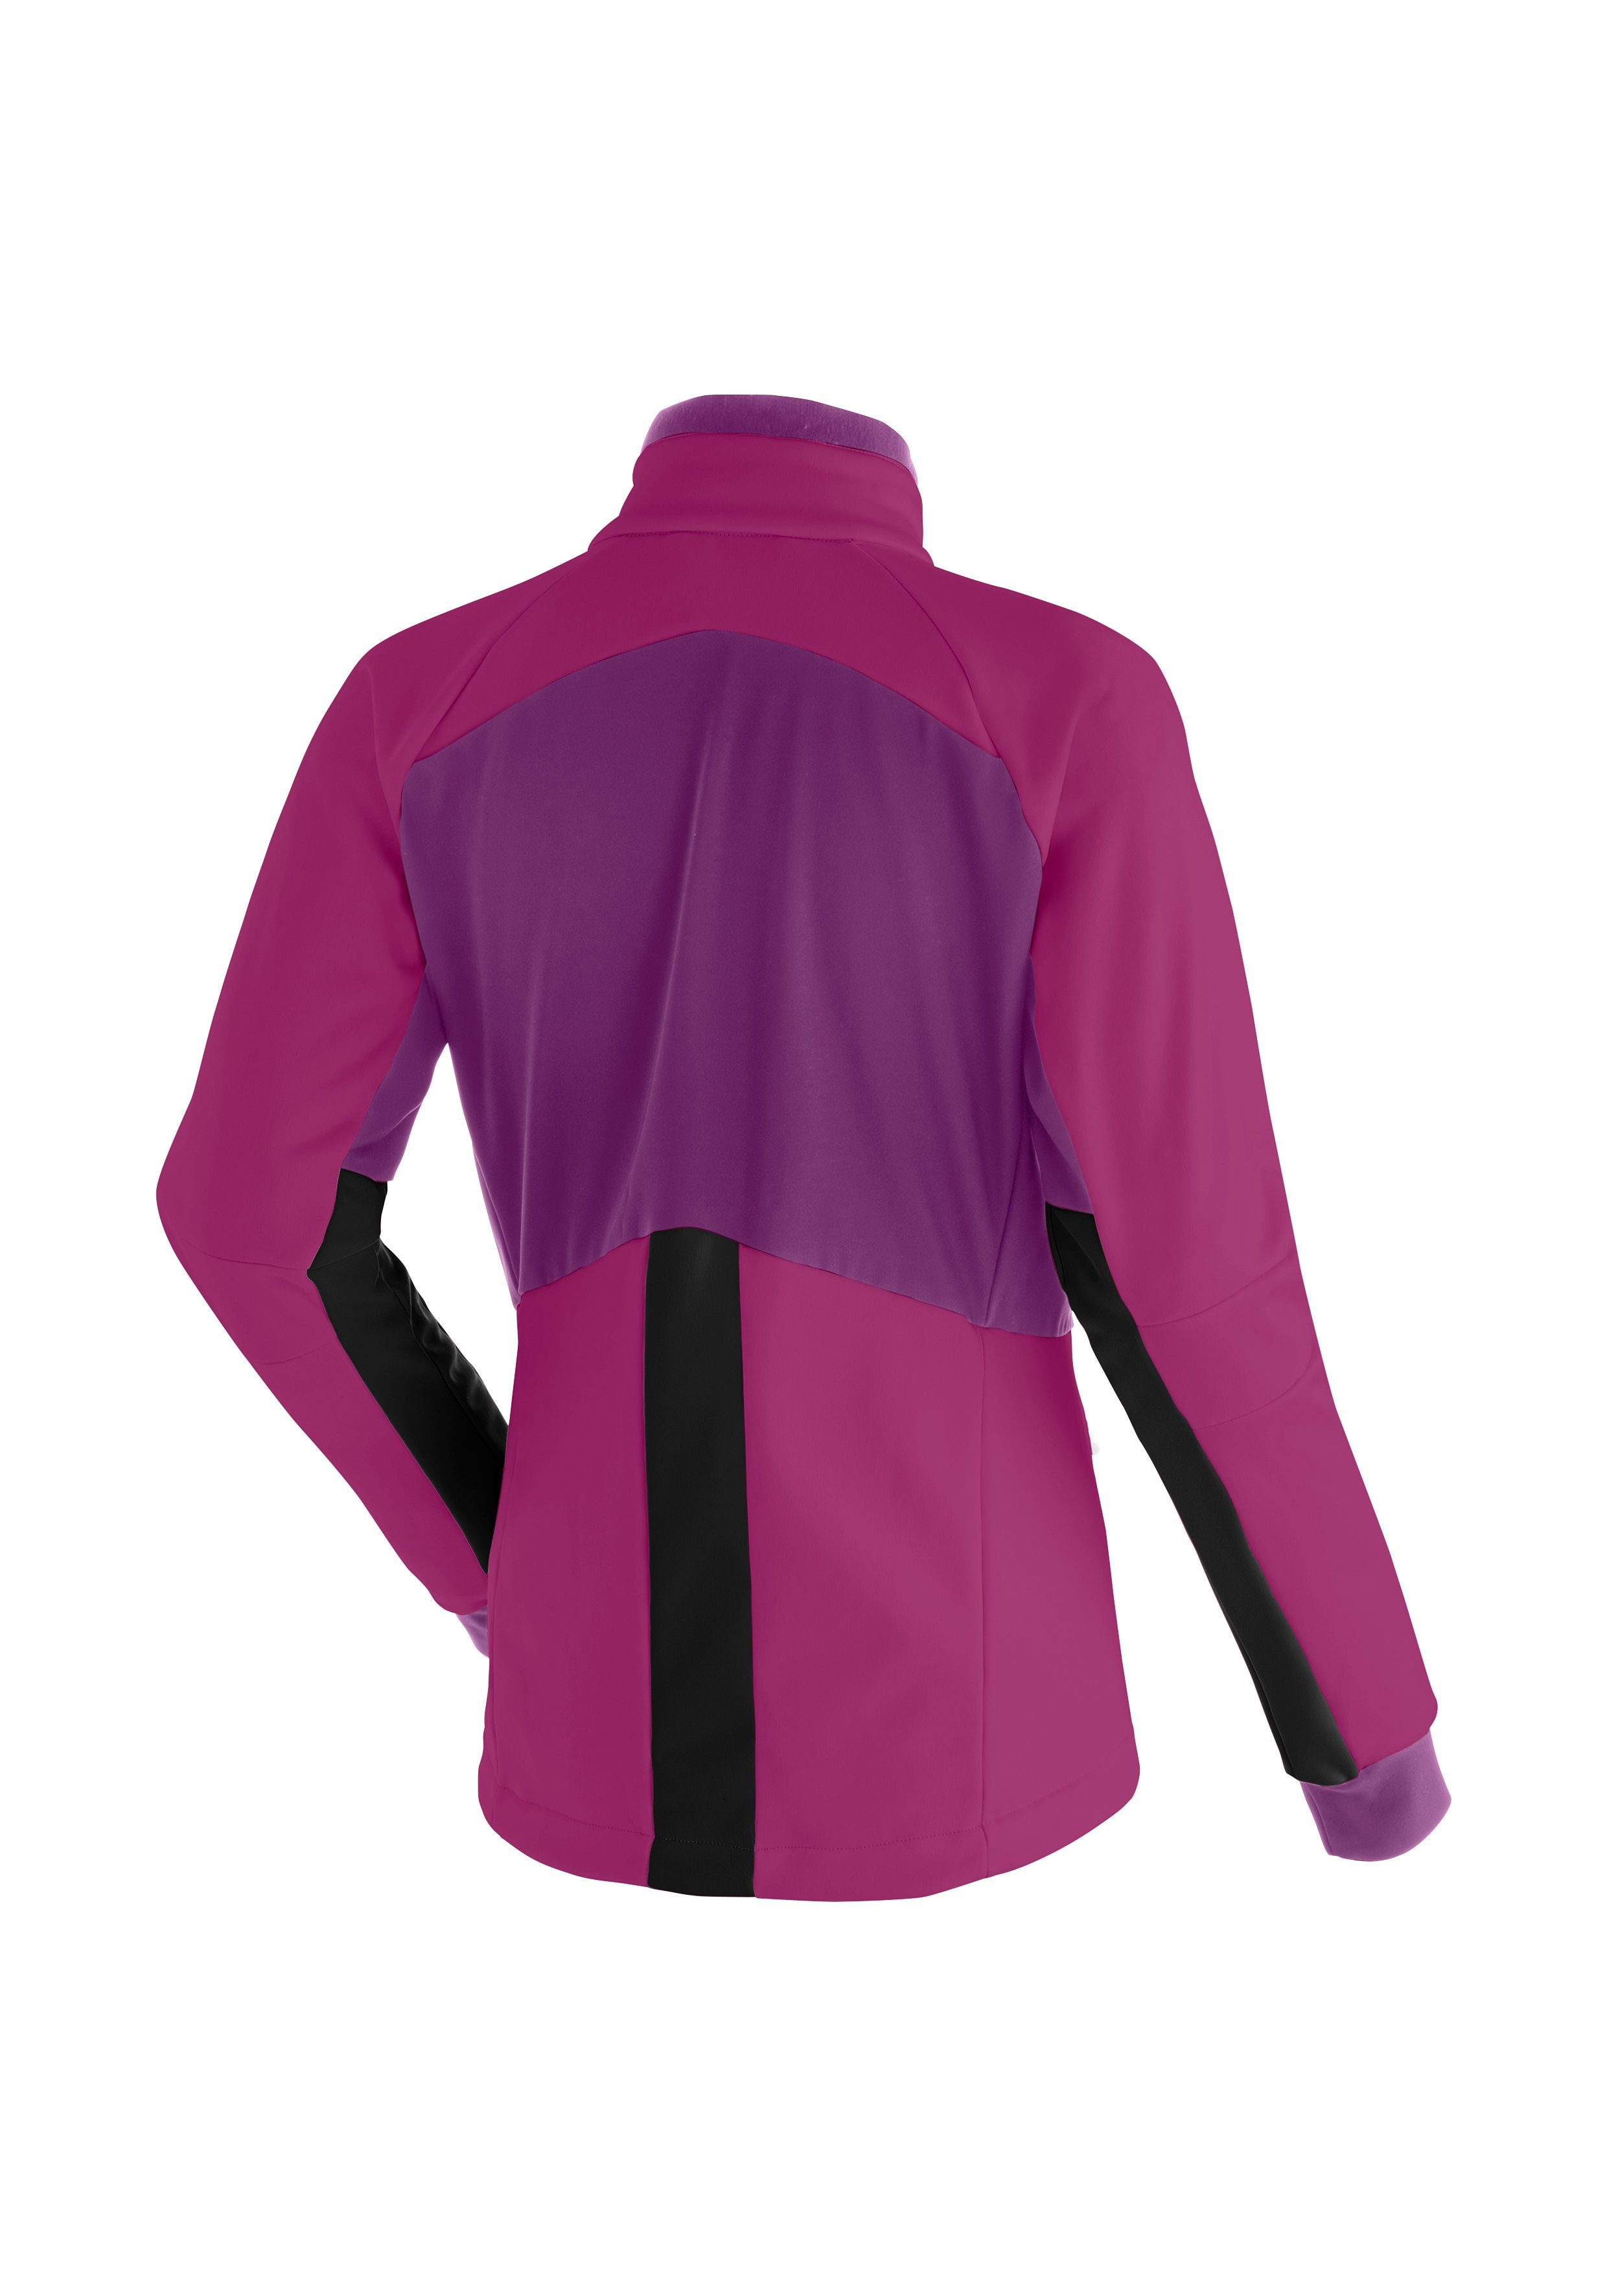 Maier Sports Softshelljacke Venabu in W dunkelviolett sportlichem Schnitt Damen Softshell-Jacke